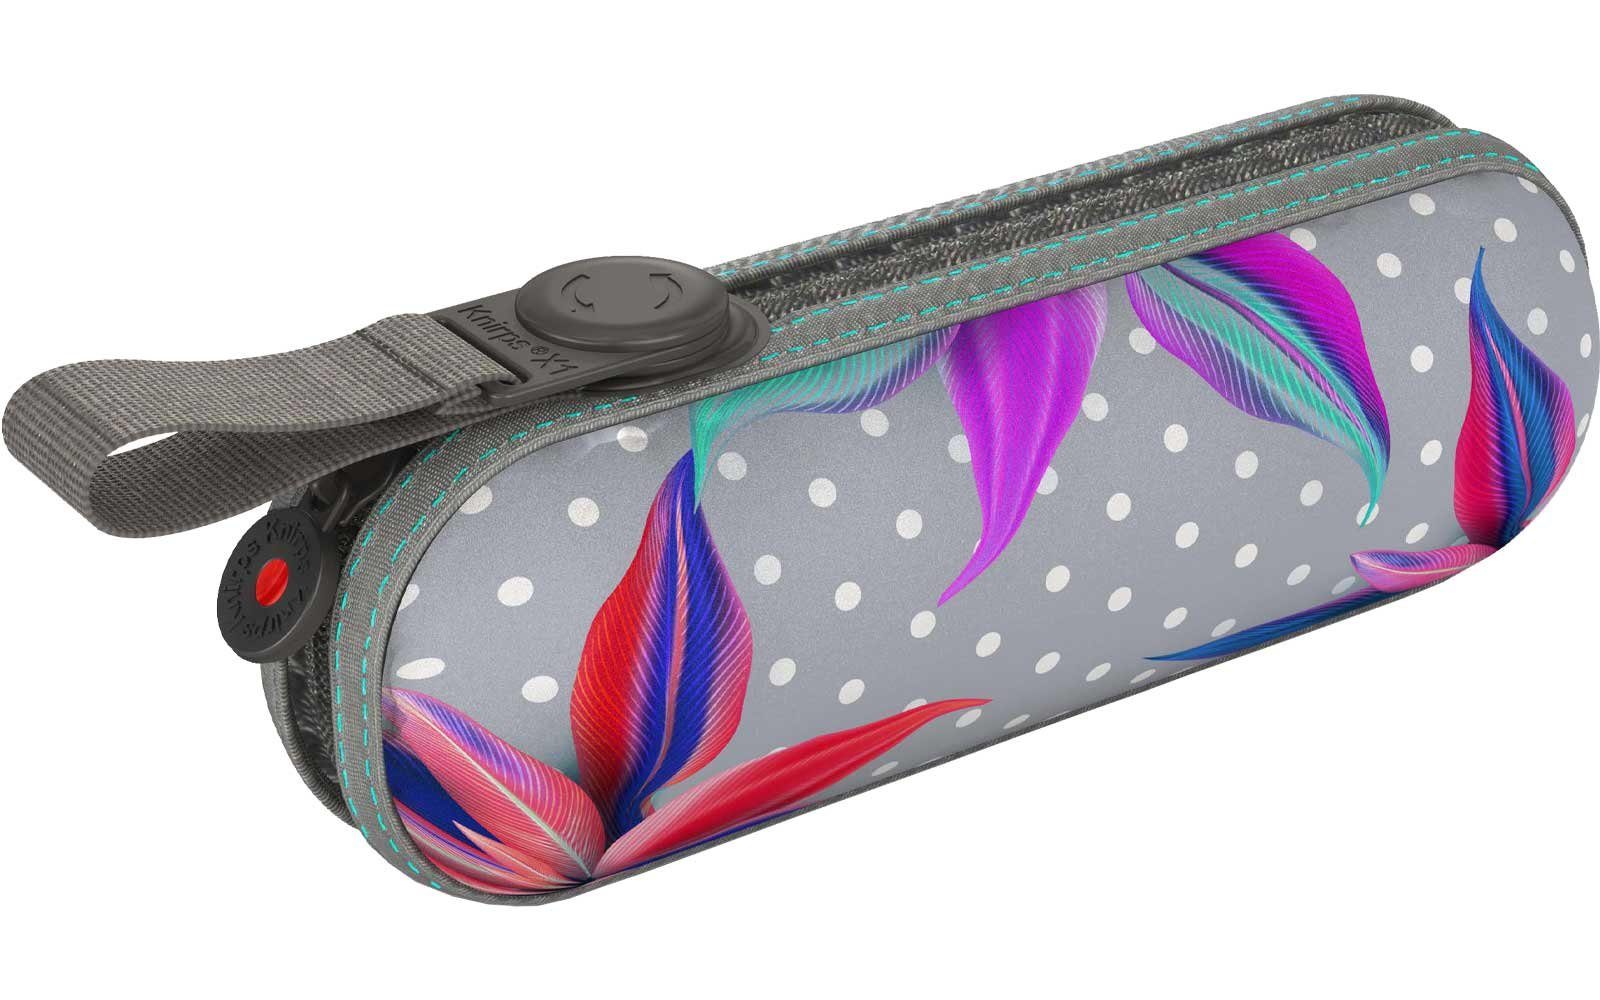 Knirps® Taschenregenschirm Super Mini X1 Begleiter im leichte, tropic, der kompakte Hard-Case UV-Schutz - kleine